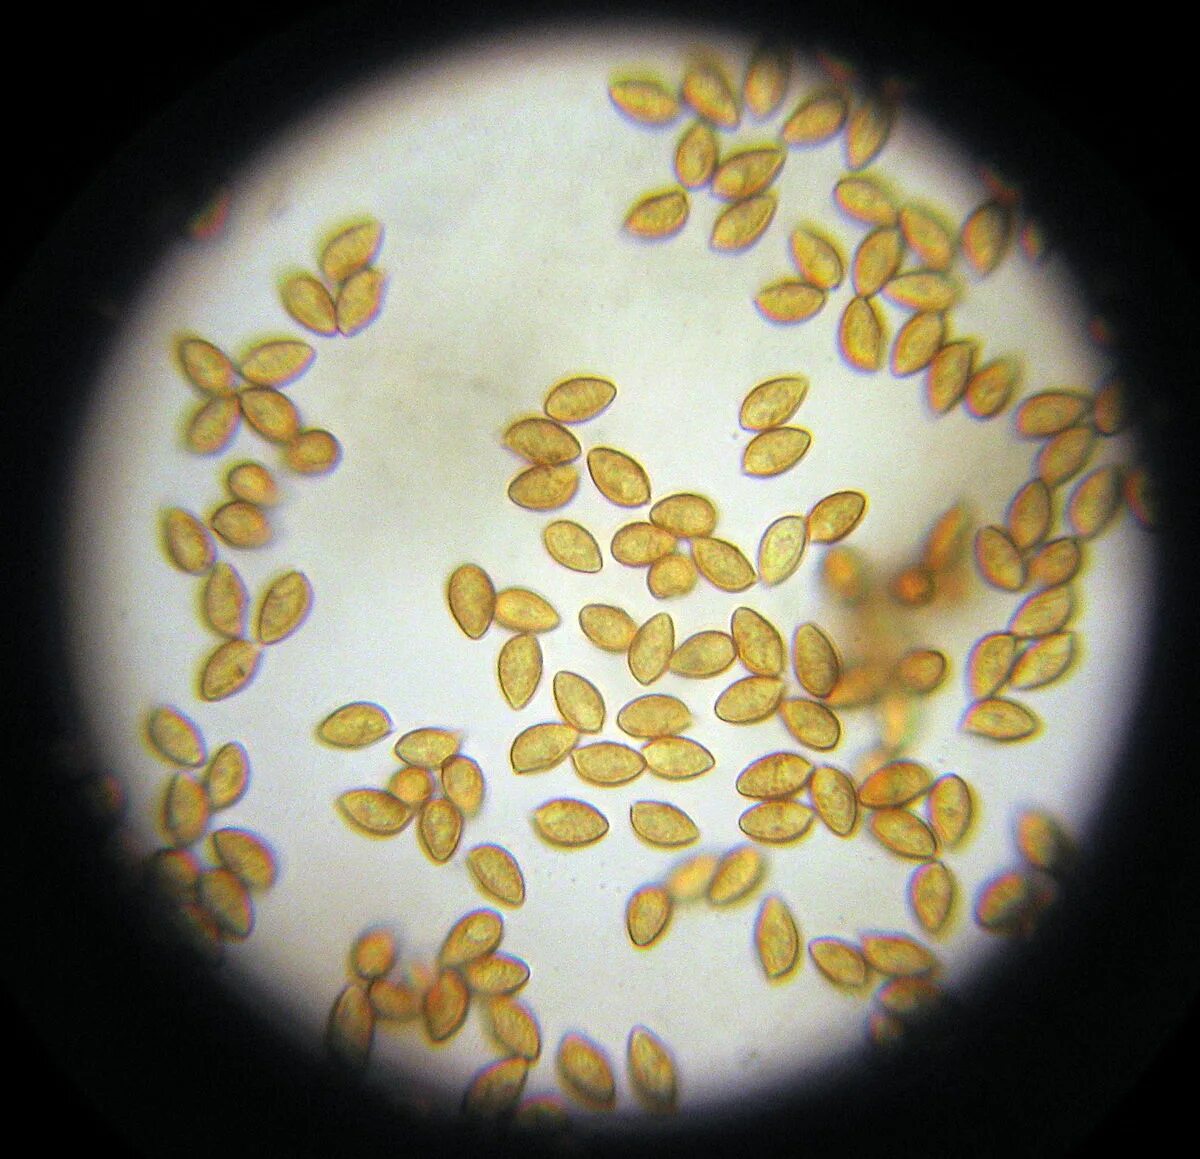 Споры грибов семена. Споры грибов микроскопия. Споры гриба микроскопия. Споры шляпочных грибов под микроскопом. Споры грибов в Кале микроскопия.